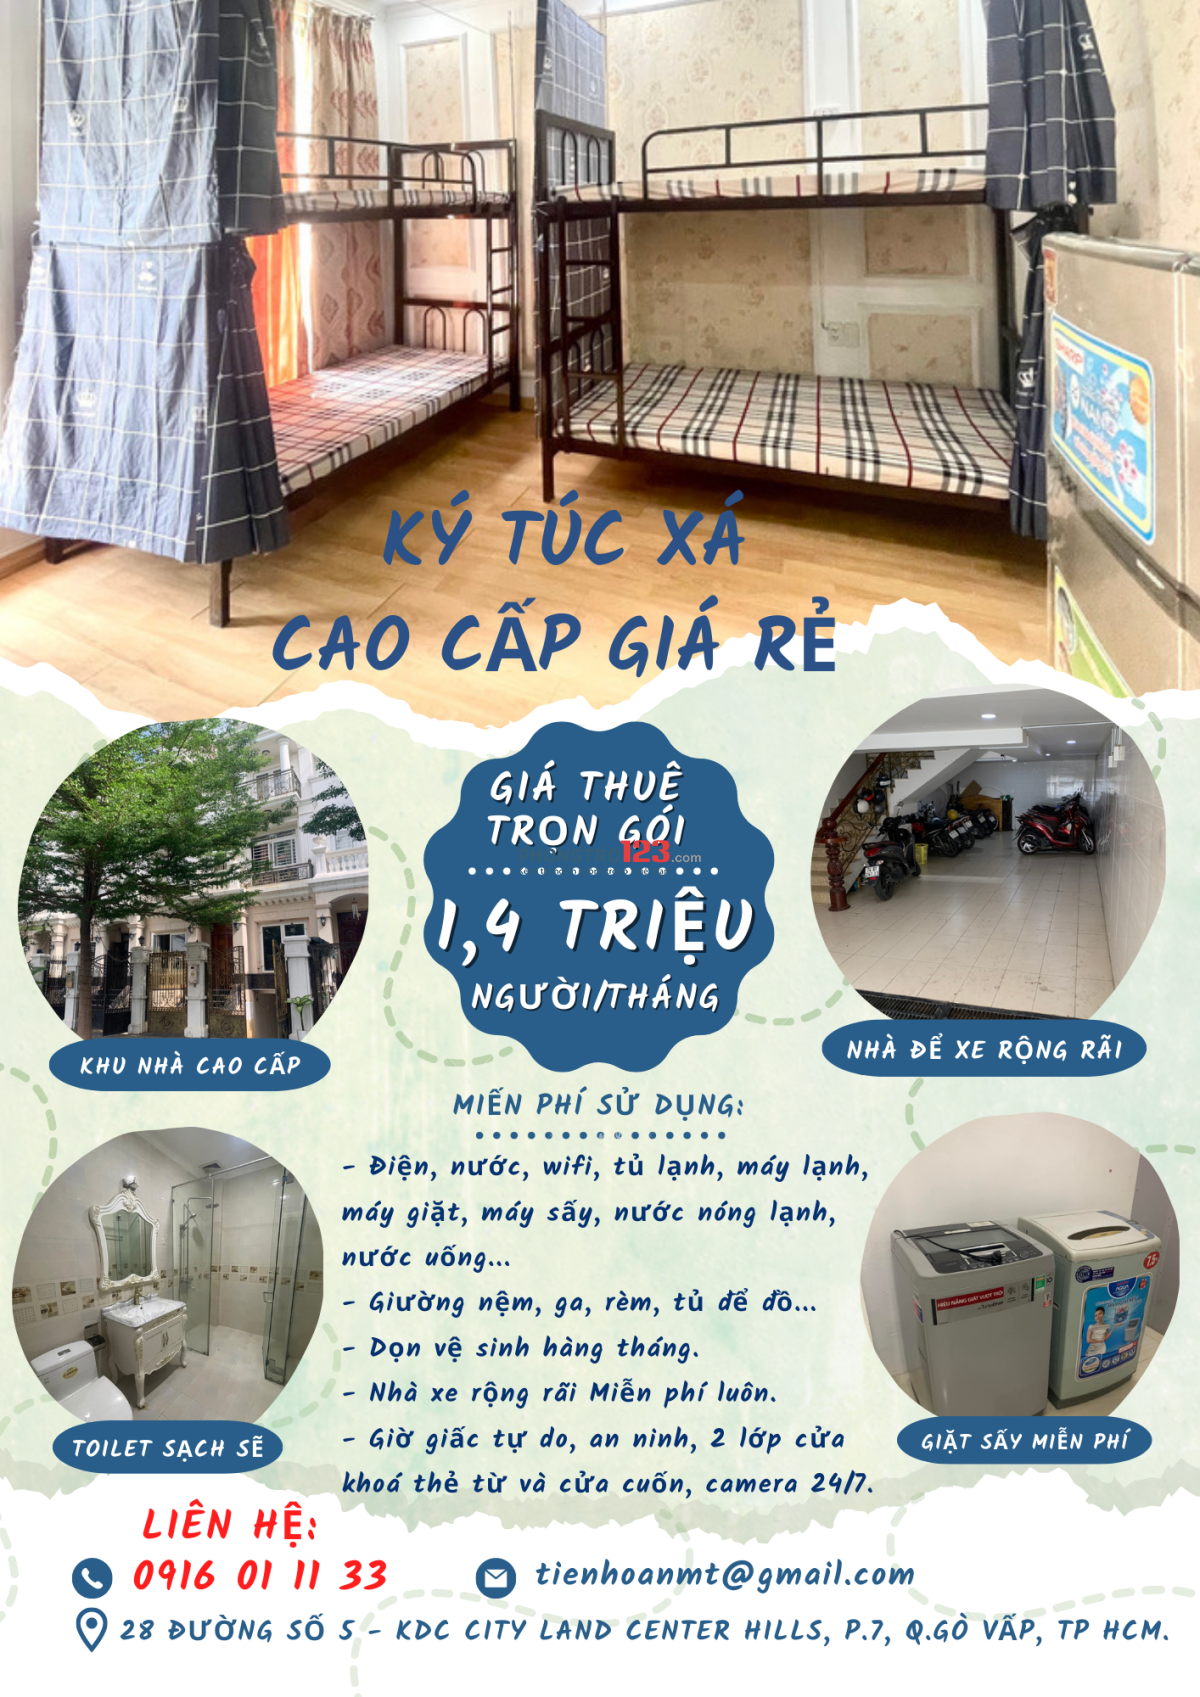 KÝ TÚC XÁ cao cấp, bao trọn gói 1,4 triệu, gần Quang Trung - Nguyễn Kiệm - Nguyễn Oanh, Gò Vấp.